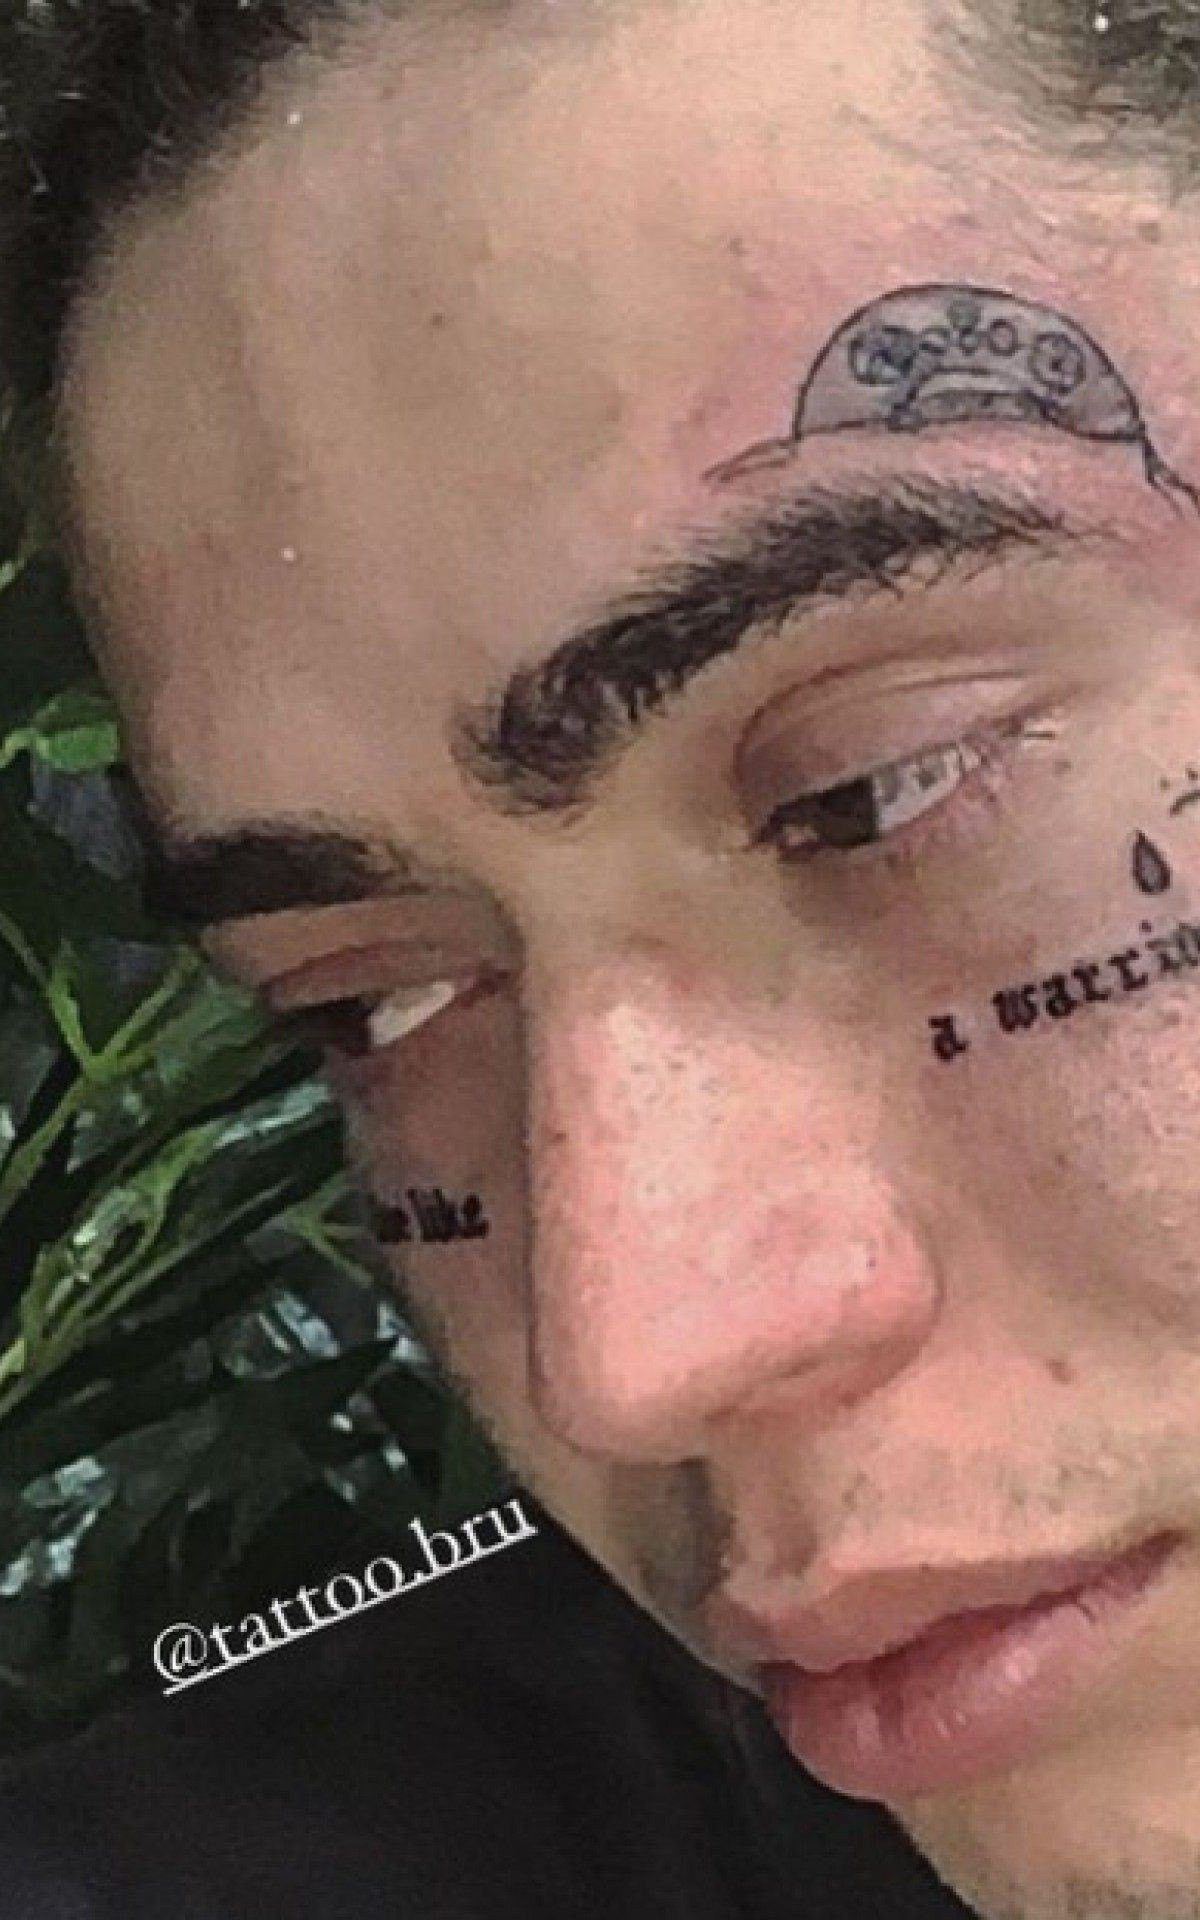 Whindersson Nunes fez novas tatuagens no rosto em homenagem ao filho - Reprodução de internet